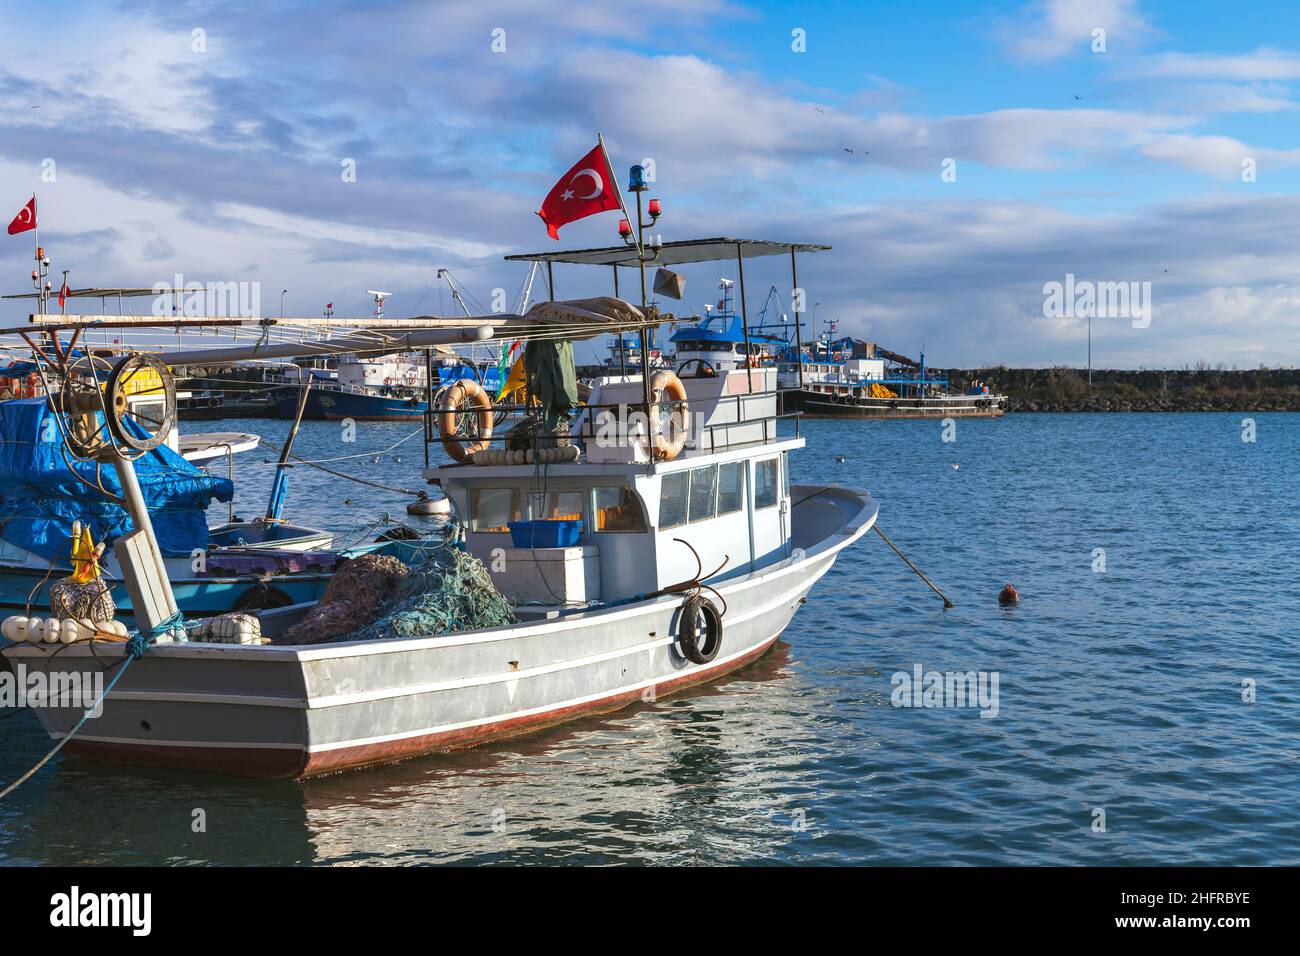 Ein kleines Fischerboot unter türkischer Flagge ist in einem kleinen Fischerhafen vertäut. Arakli, Trabzon, Türkei Stockfoto